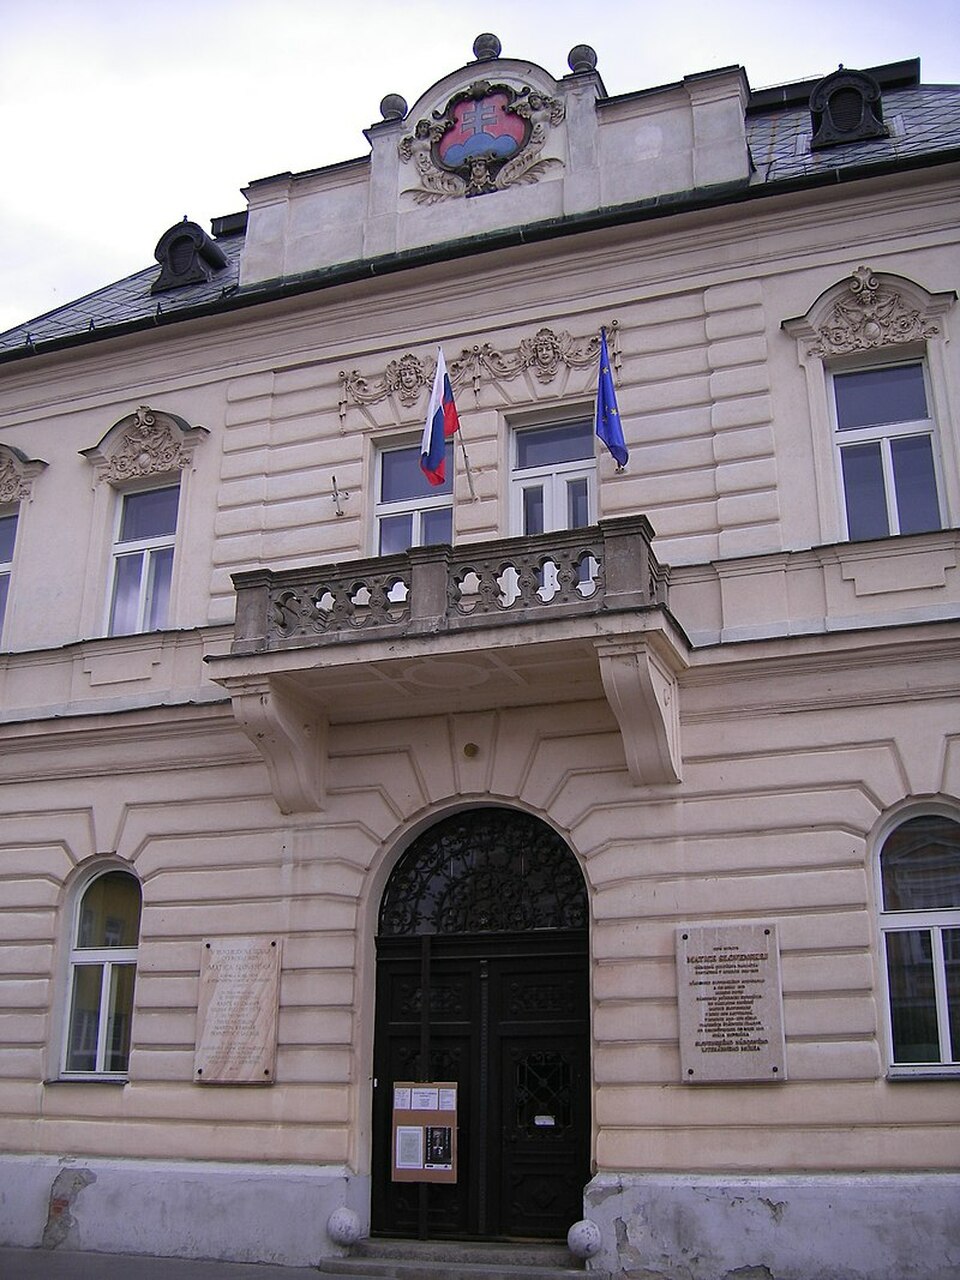 Turócszentmárton (Martin), a Matica Slovenská egykori székháza 2008-ban, tervező: id. Bobula János (Wikipedia/Szeder László)